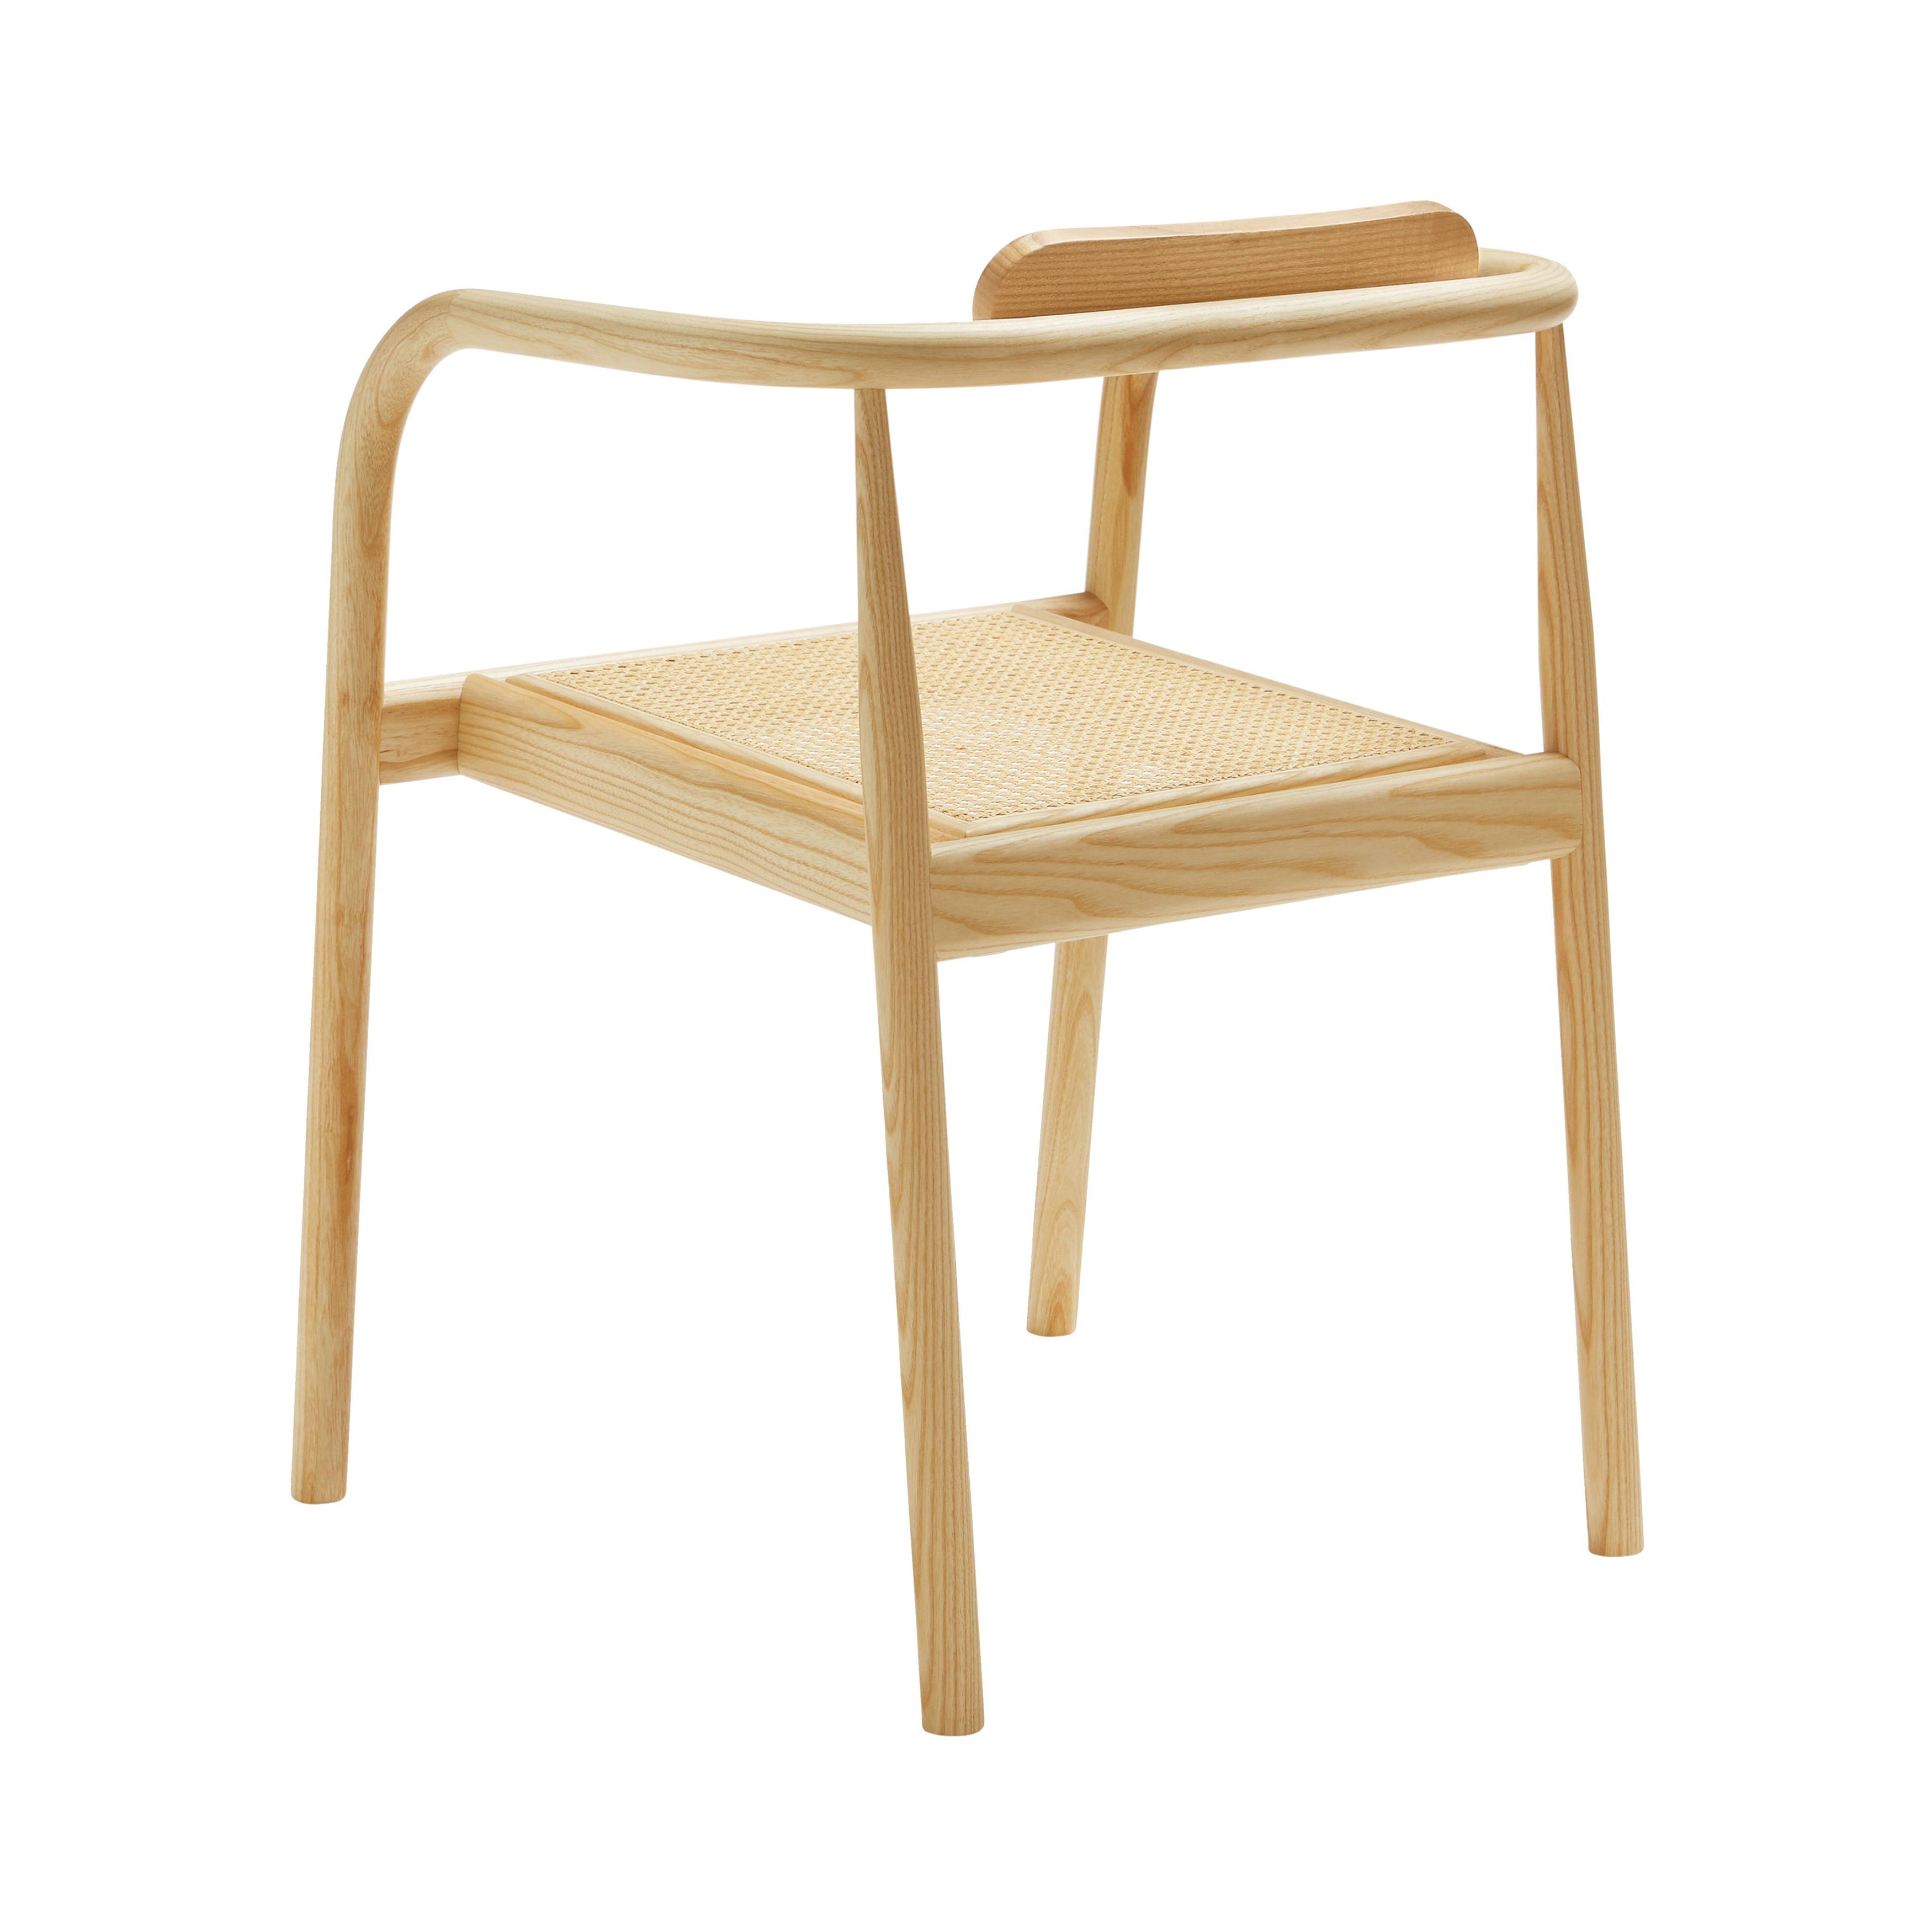 Ahm Chair: Natural Ash